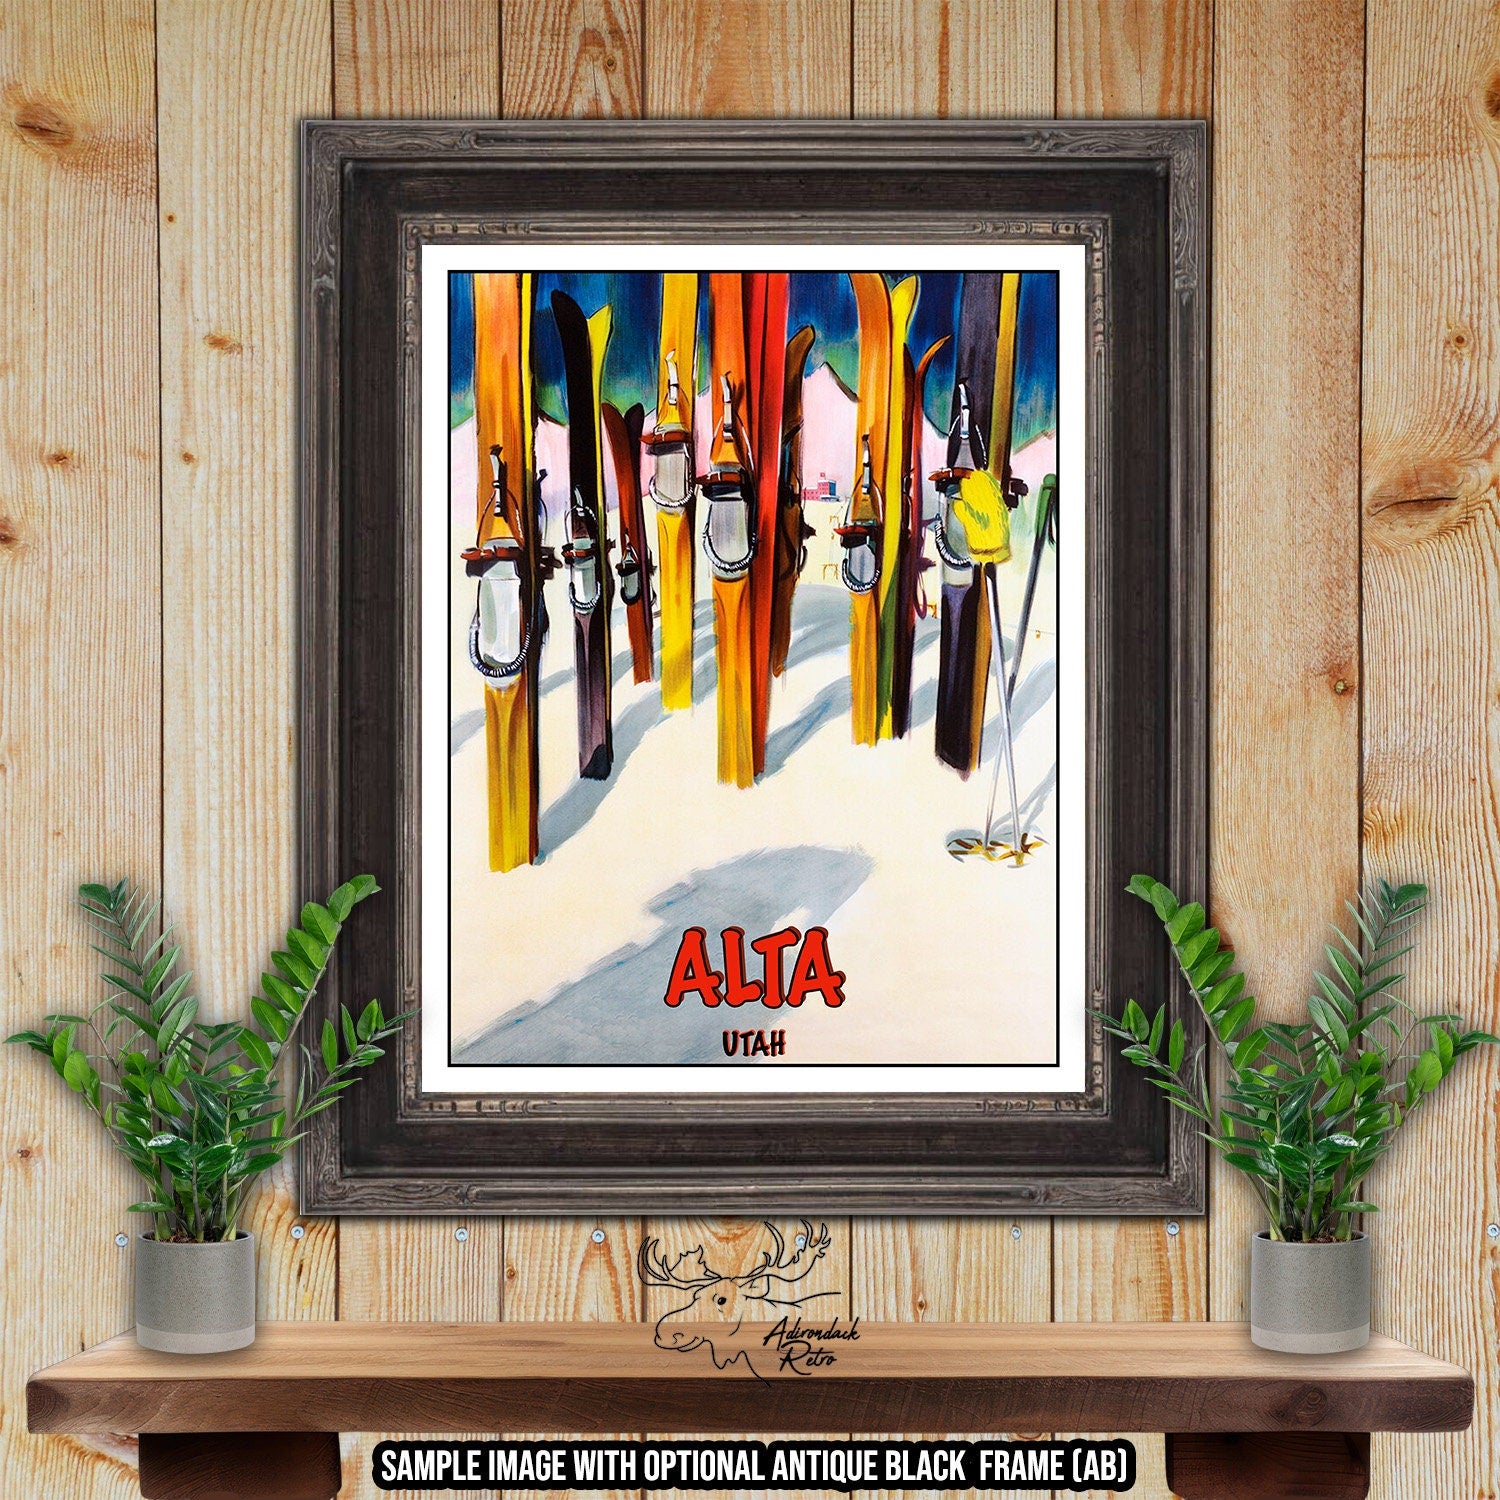 Alta Ski Resort Print - Utah Retro Ski Resort Poster at Adirondack Retro